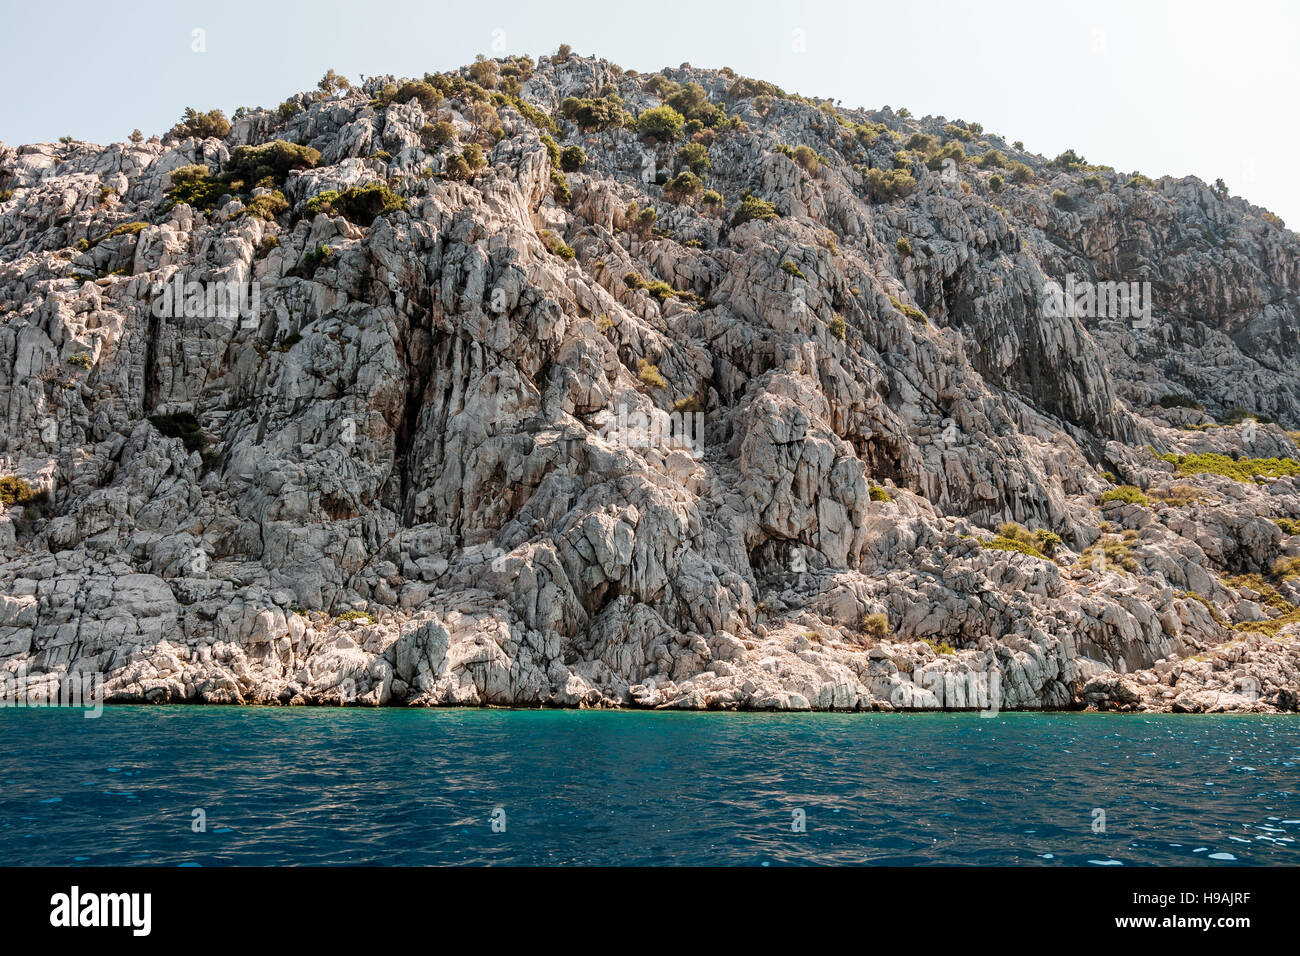 Rock coastline in the sea, Turkey Stock Photo